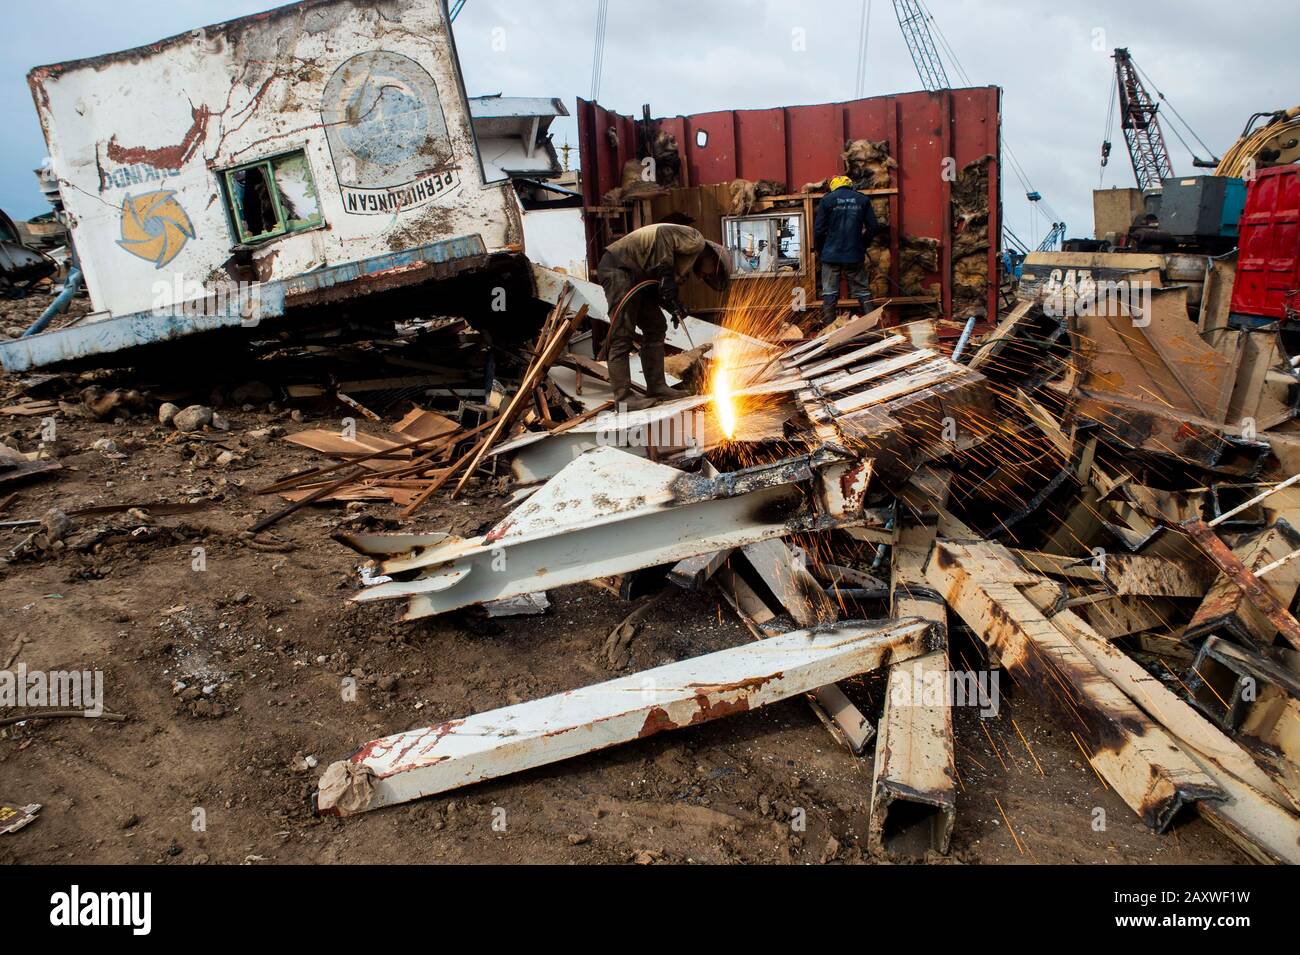 (200213) -- JAKARTA, 13. Feb. 2020 (Xinhua) -- Menschen arbeiten auf einem Schiffbruch in Cilincing in Jakarta, Indonesien, 13. Februar 2020. Schiffbruch ist ein Recyclingverfahren, bei dem Schiffe auseinandergenommen und als Schrott verkauft werden. (Xinhua/Agung Kuncahya B.) Stockfoto